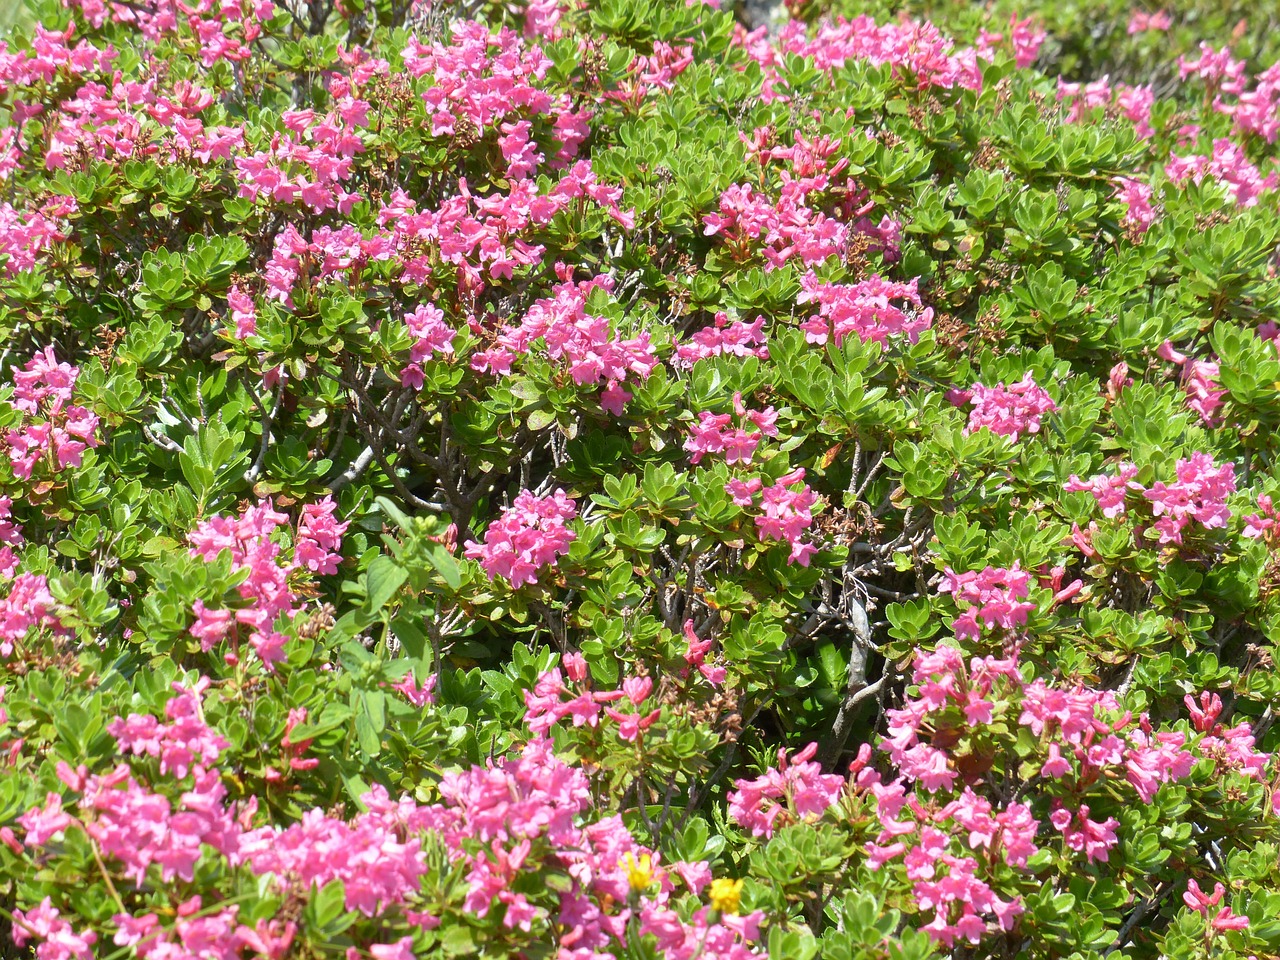 Raugintas Alpenrozė, Gėlės, Rožinis, Rhododendron Hirsutum, Rododendras, Žalia Virškėlis, Ericaceae, Alpių Augalas, Alpių Gėlė, Almrausch